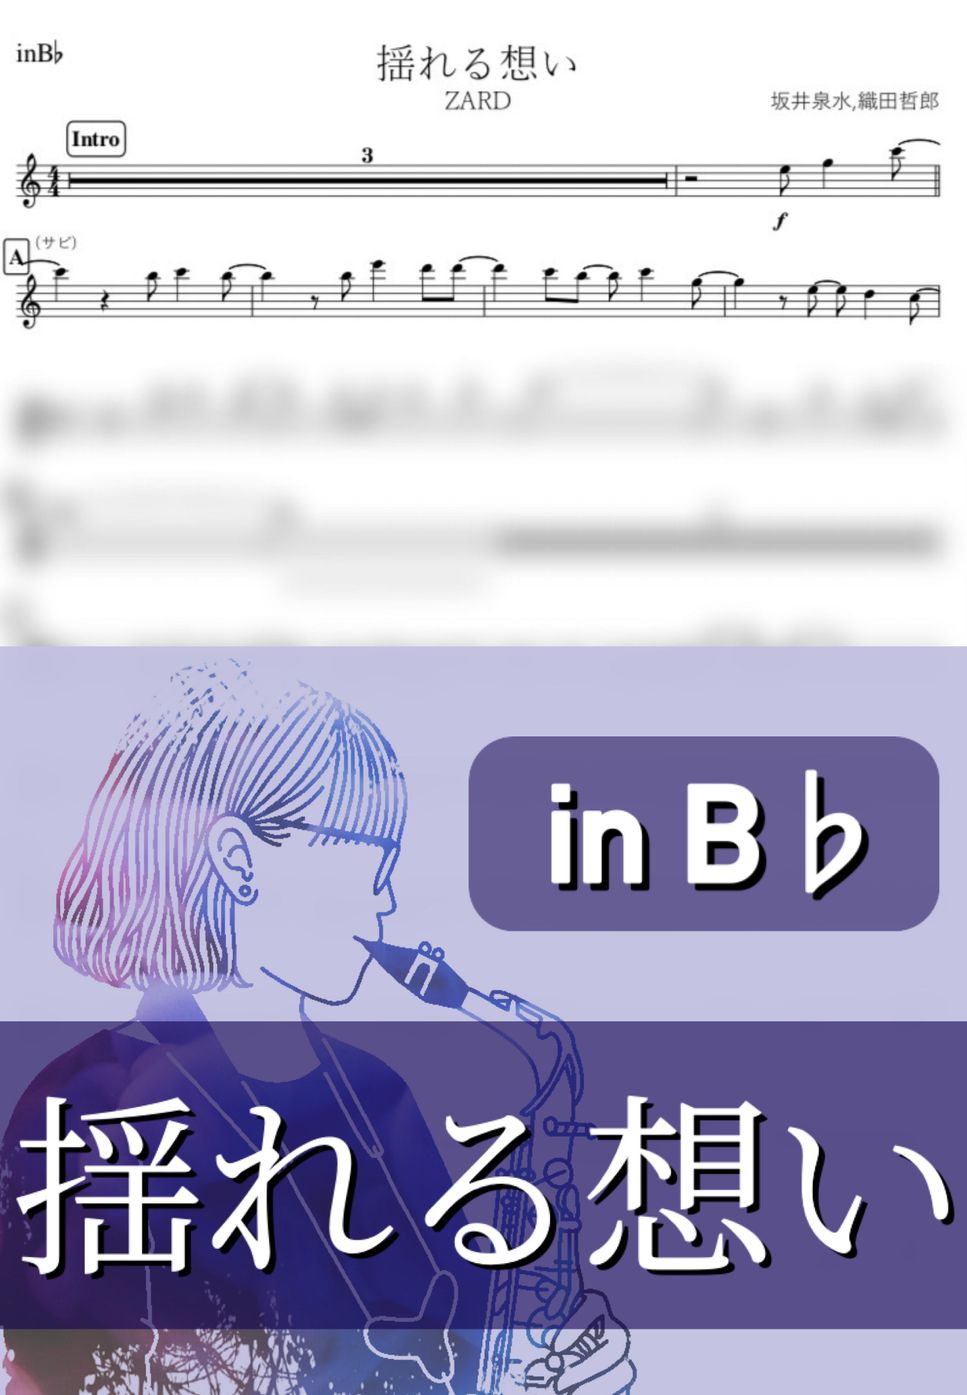 ZARD - 揺れる想い (B♭) by kanamusic